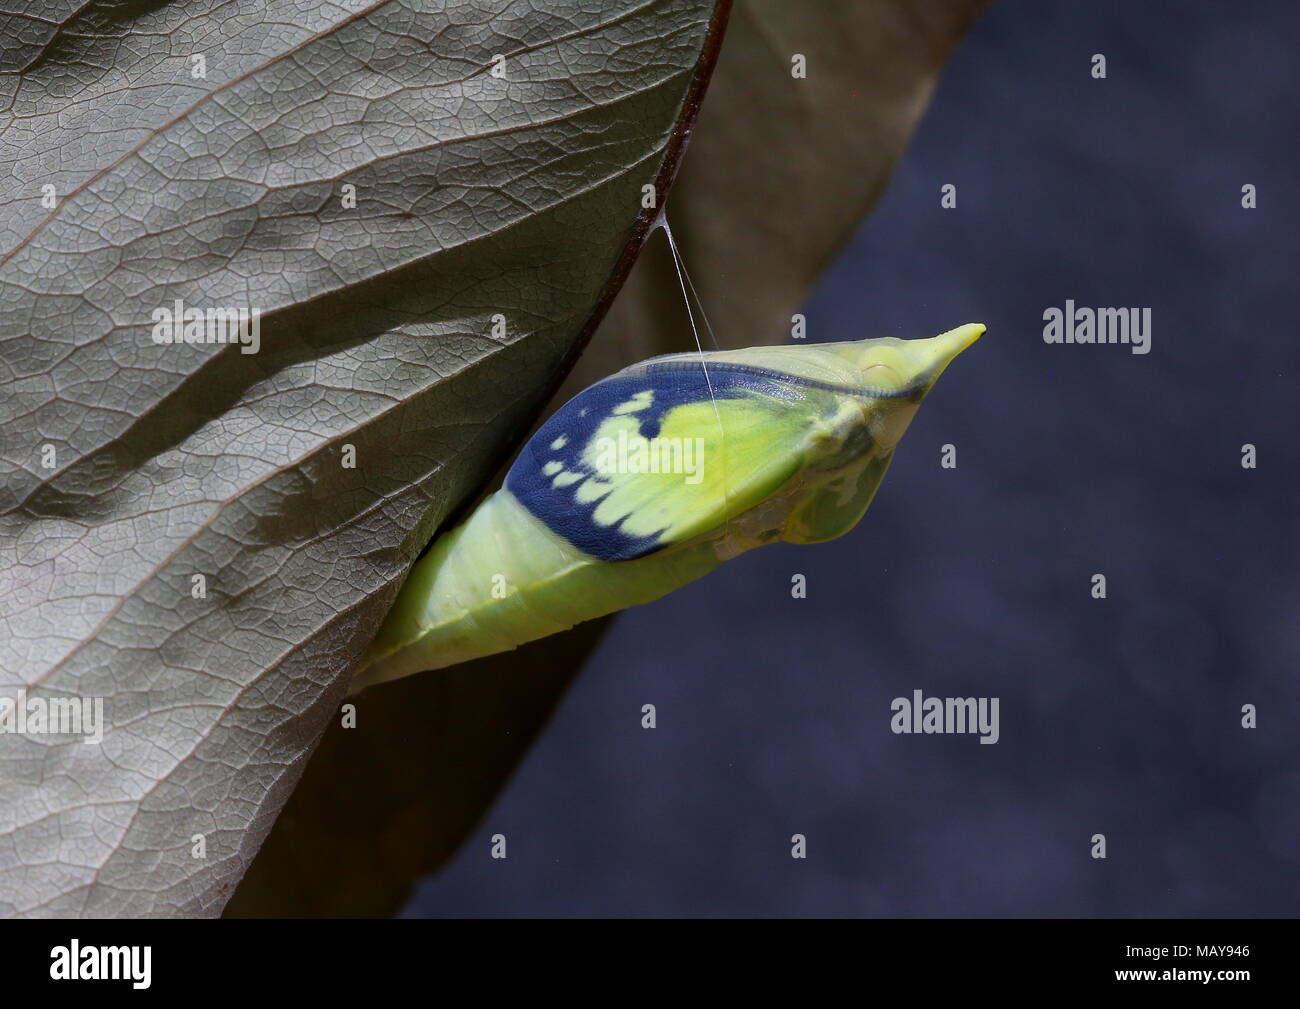 Pupa matura della farfalla comune emigrante o Limone Emigrante, Catopsilia pomona con pad ad ala trasparente che mostra l'ampio bordo nero Foto Stock